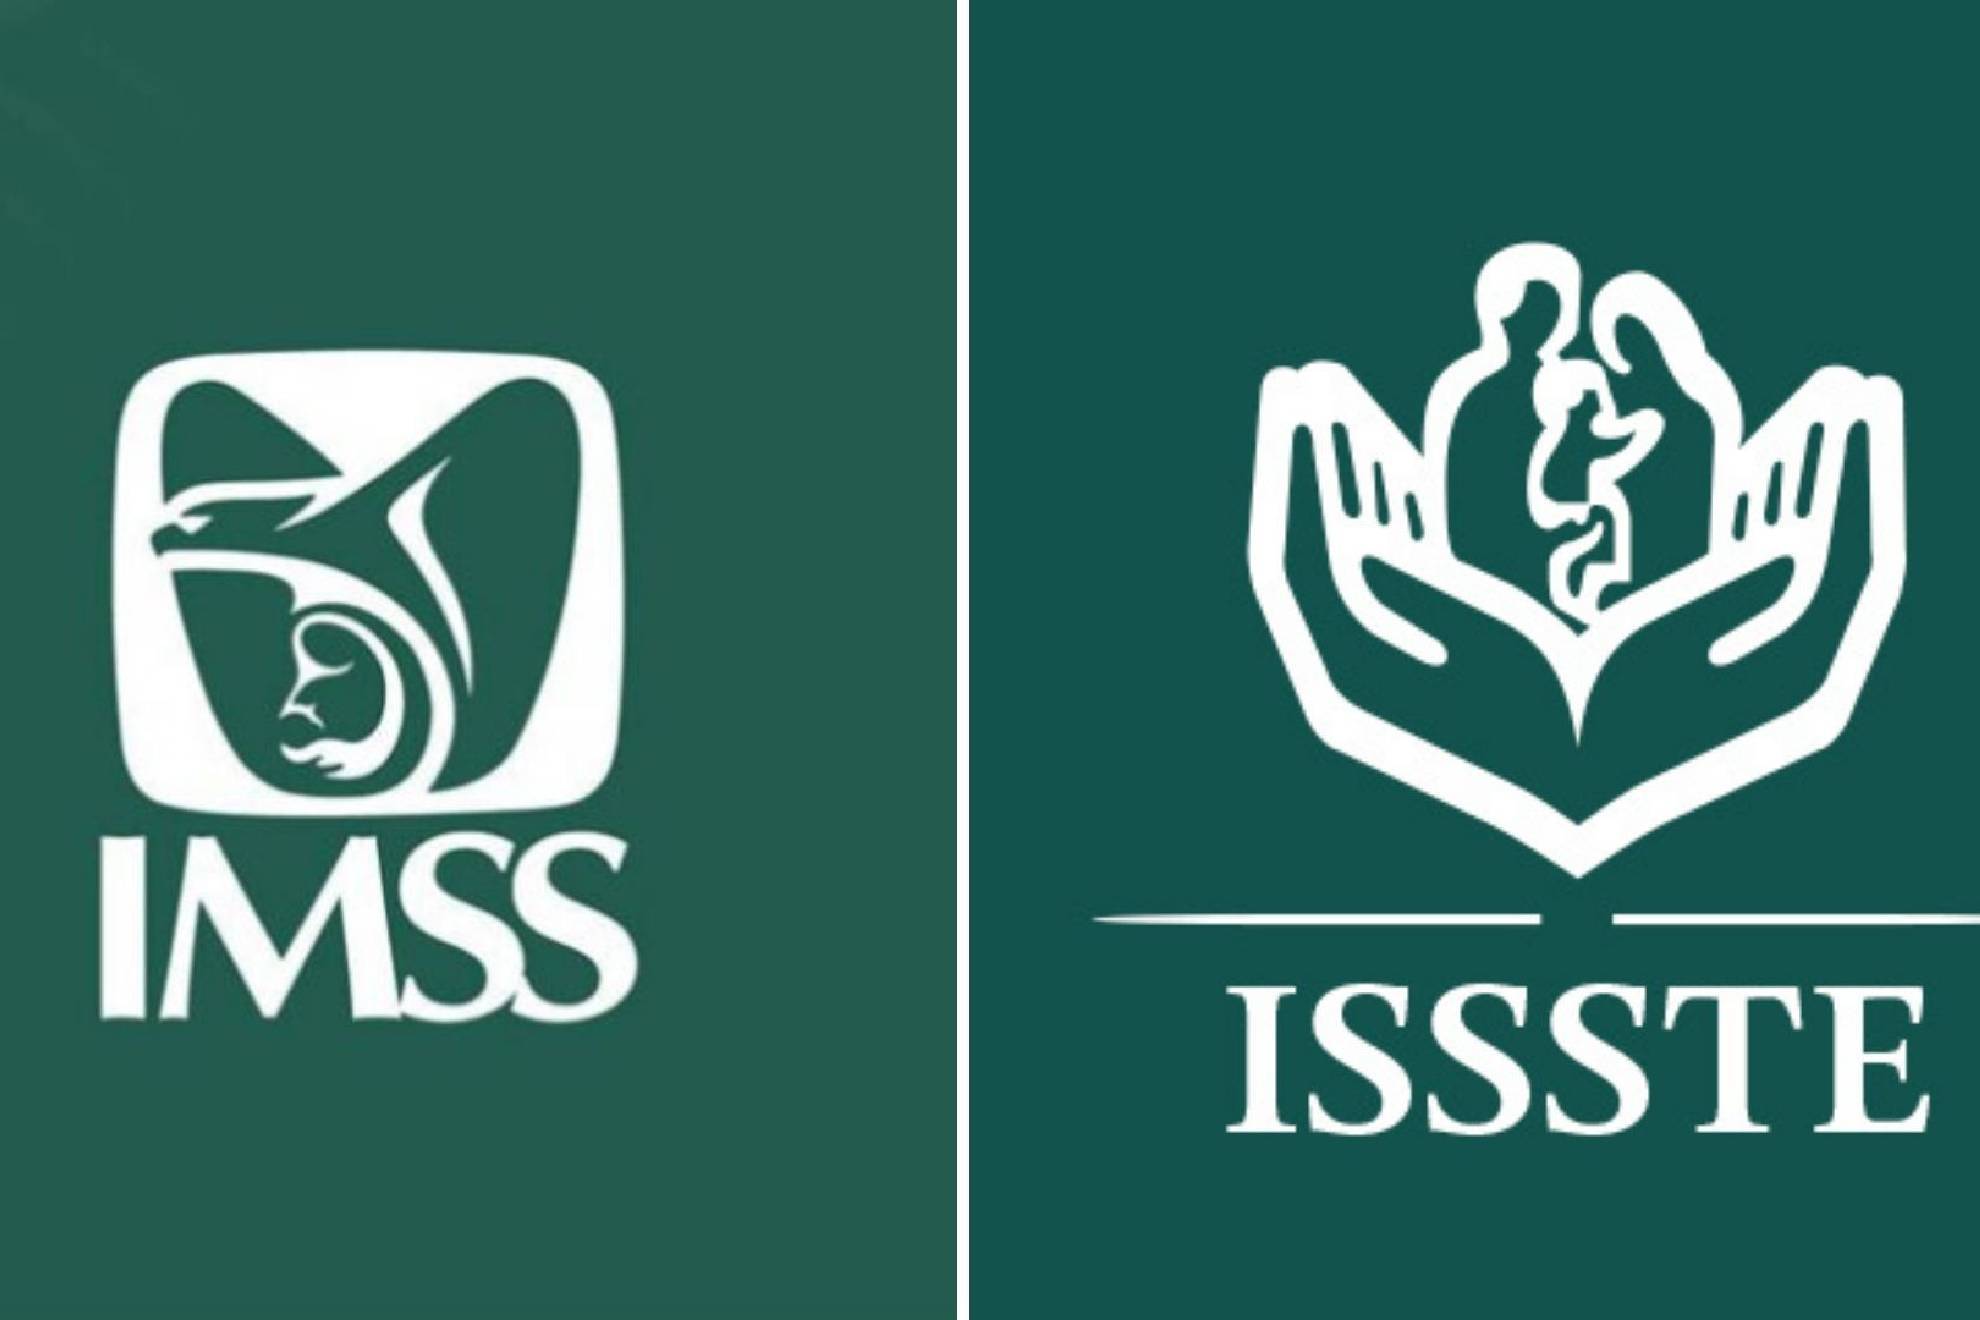 En abril se podrá cobrar la pensión del IMSS y del ISSSTE.